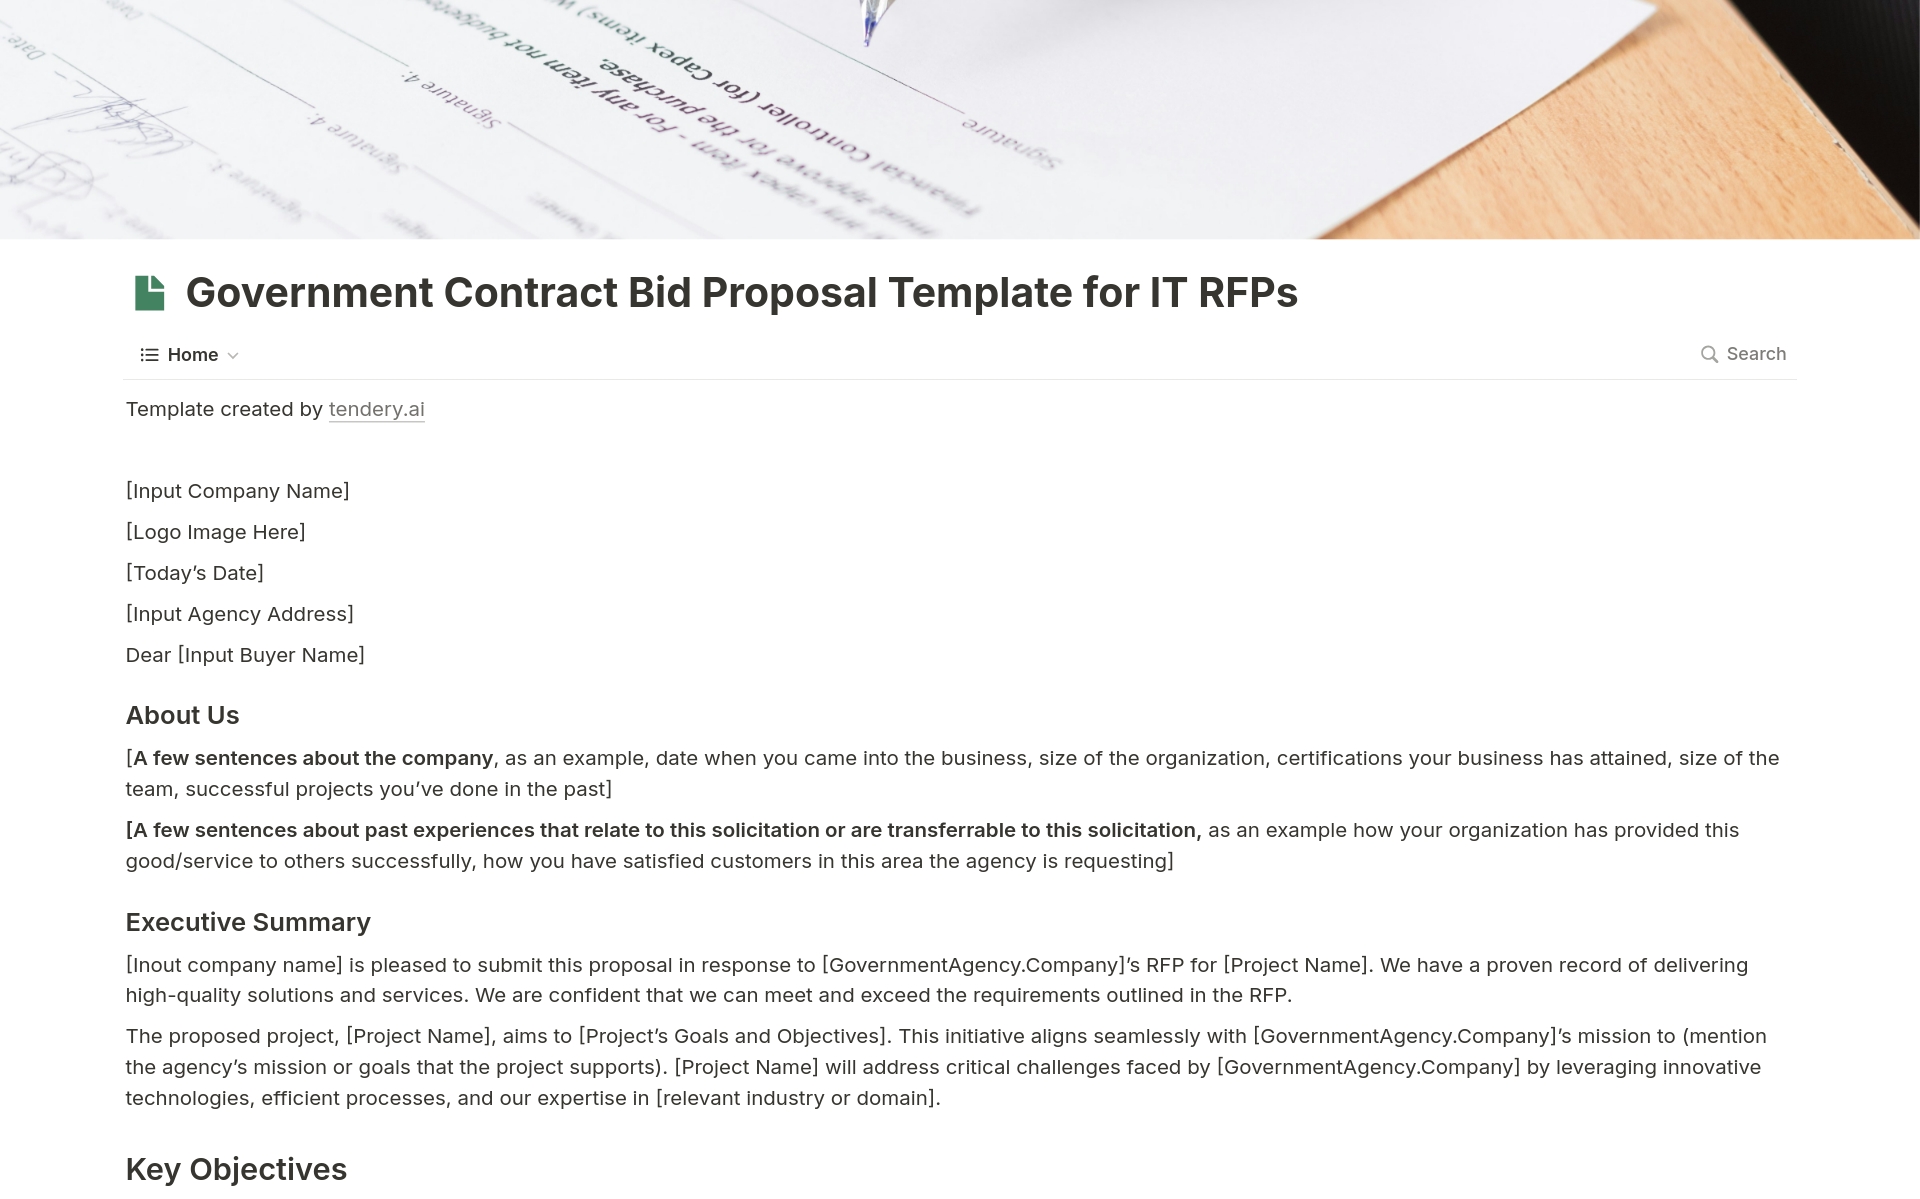 Uma prévia do modelo para Bid proposal for IT RFPs